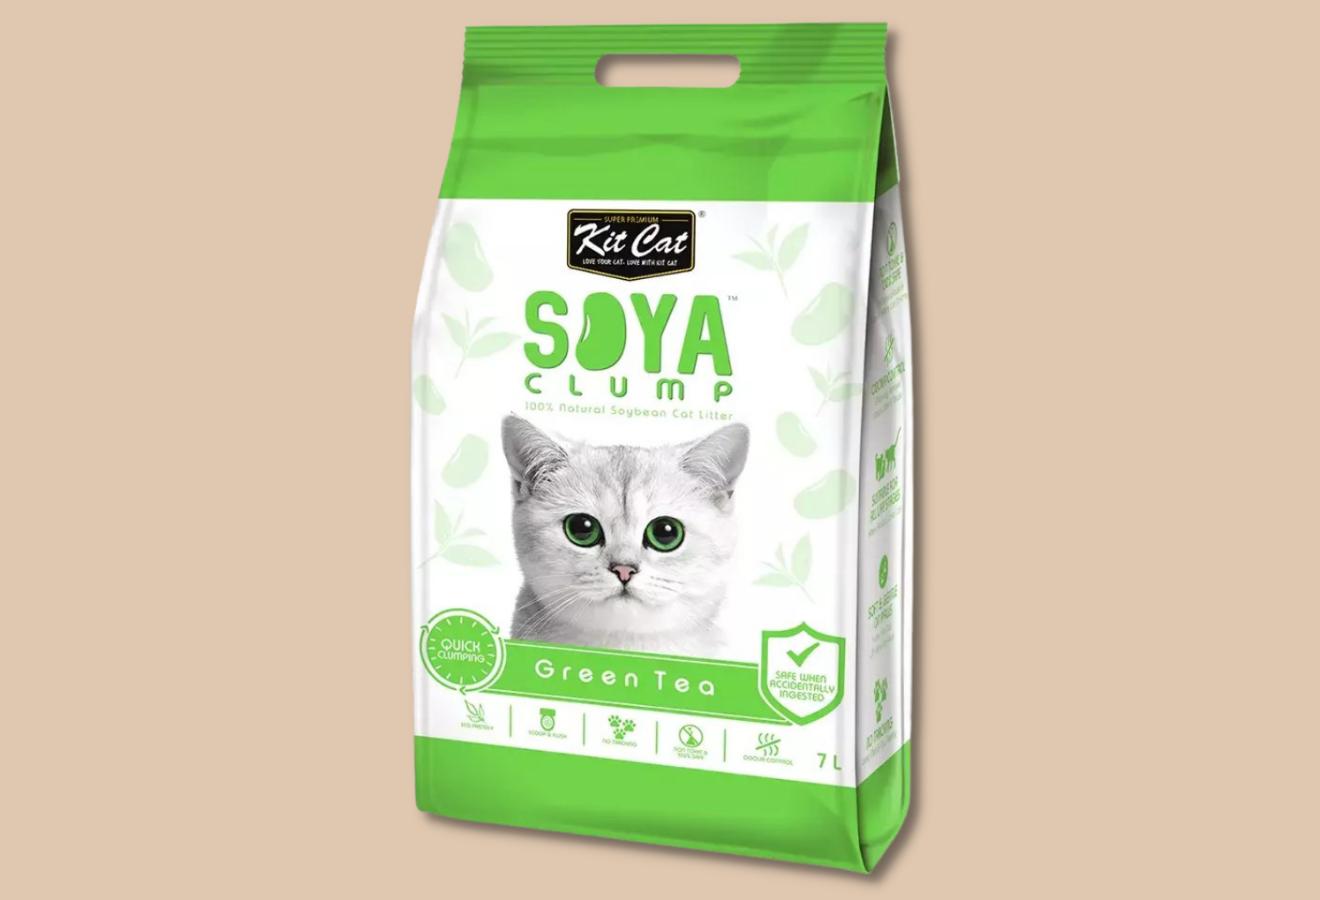 Kitcat Soya Clump - Cát Đậu Nành Vón Cục Cho Mèo 7L